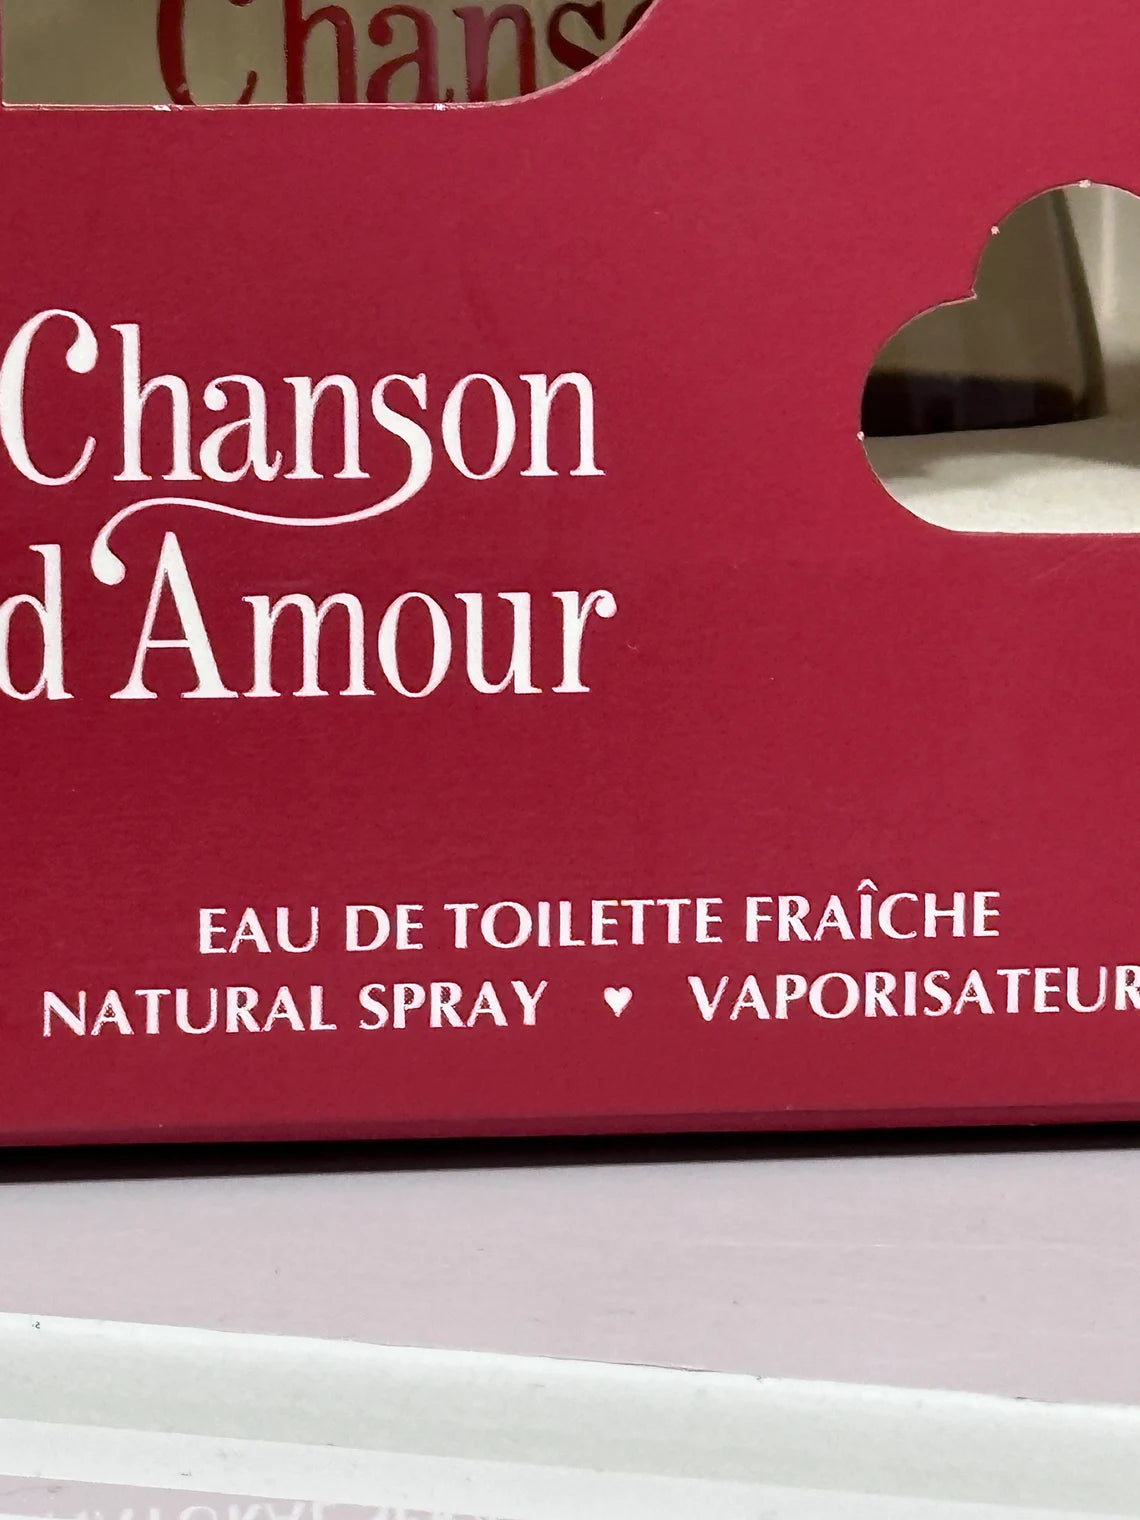 CHANSON D AMOUR COTY Eau de Toilette neu im Karton neu im Karton 100 ml Spray unbenutzt. Ohne zu benutzen.